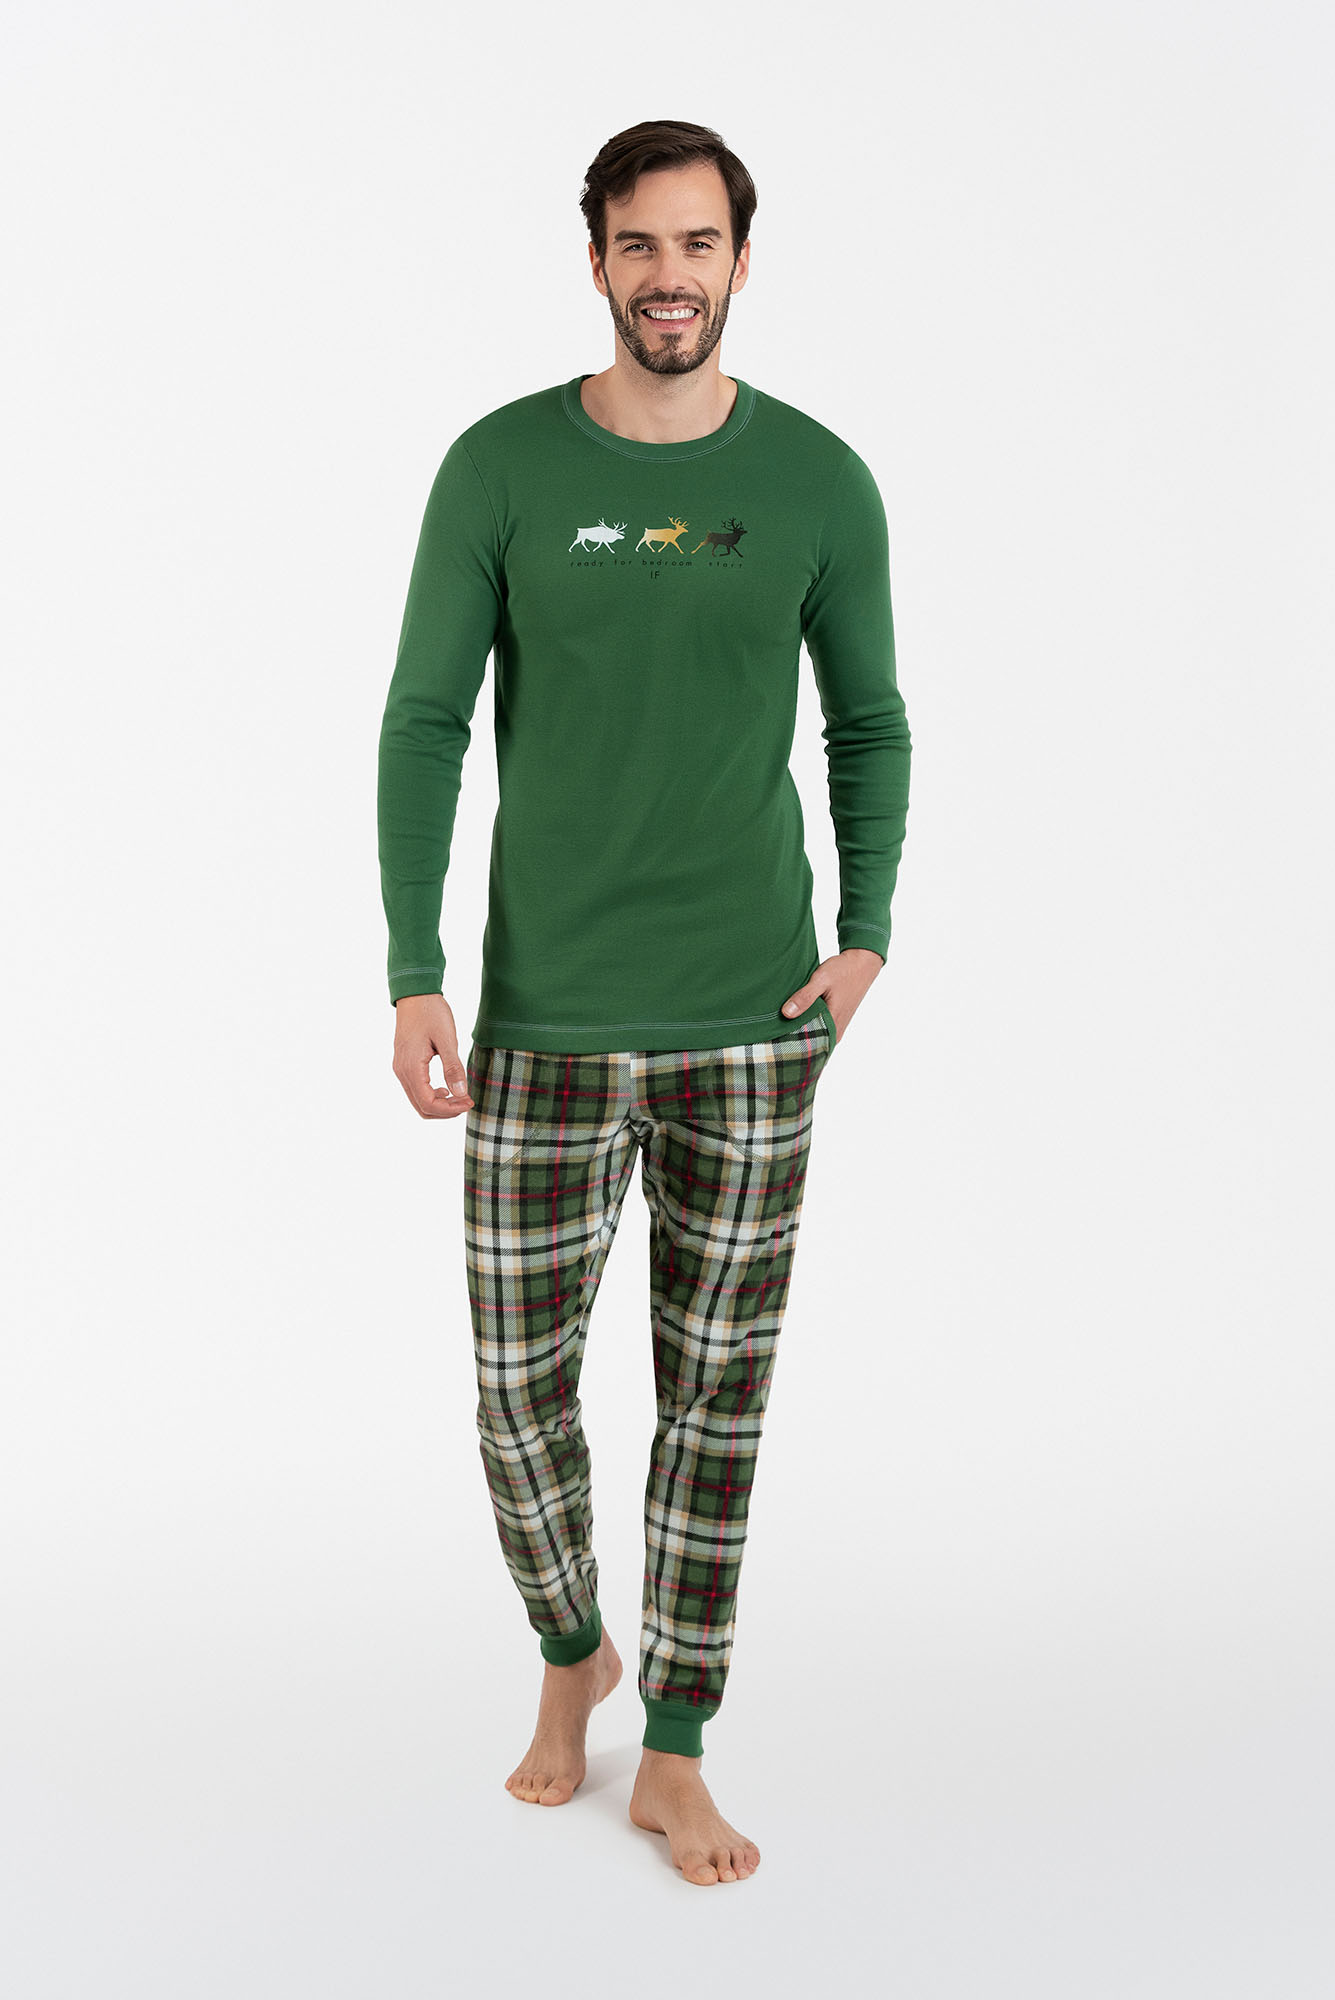 Seward Men's Long Sleeve Pajamas, Long Pants - Green/Print